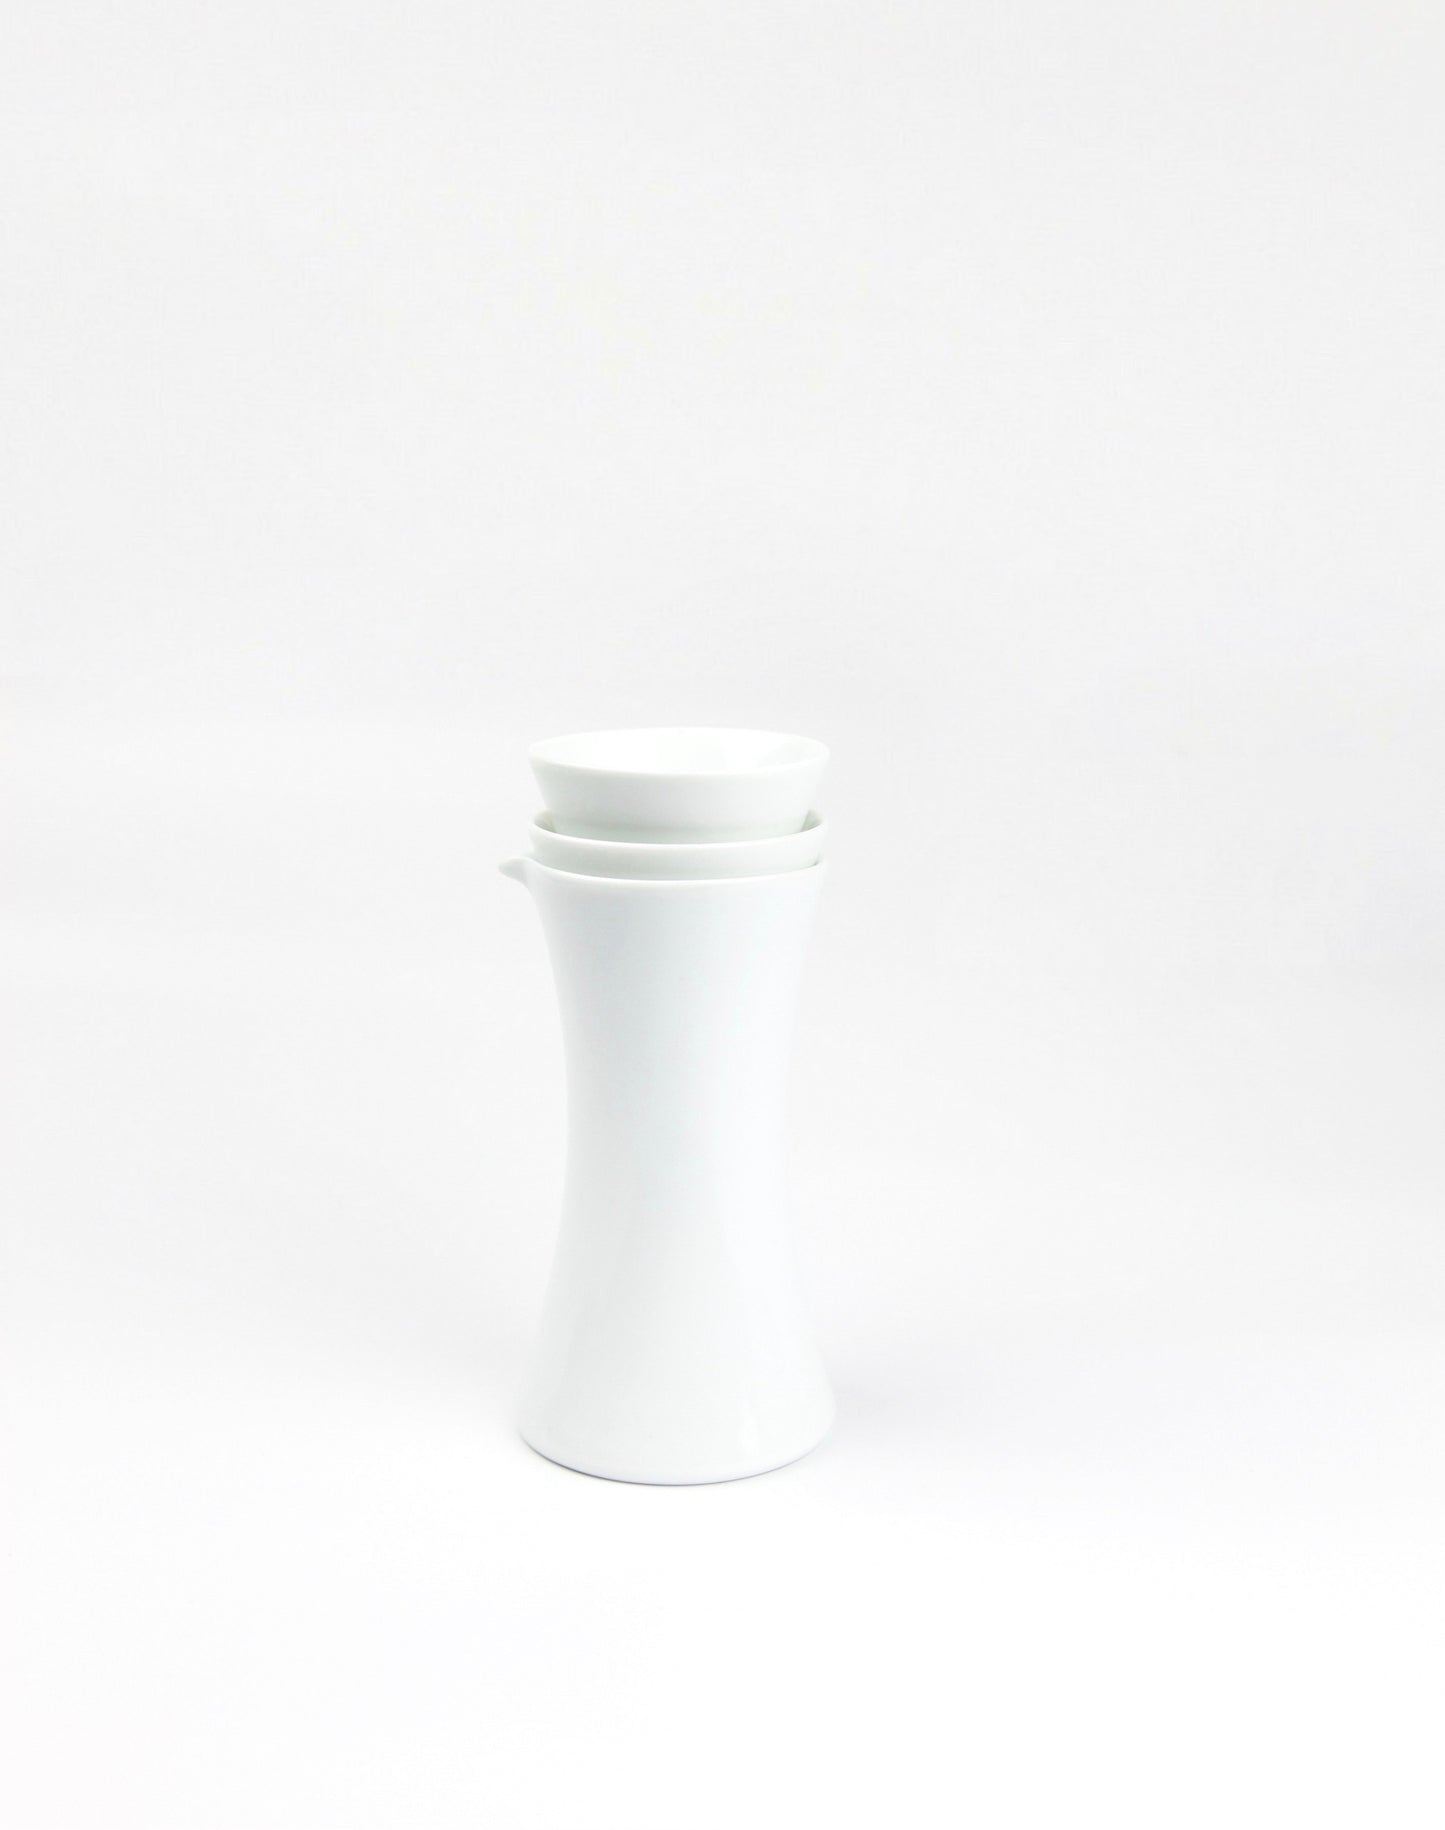 Sake set bottle cup